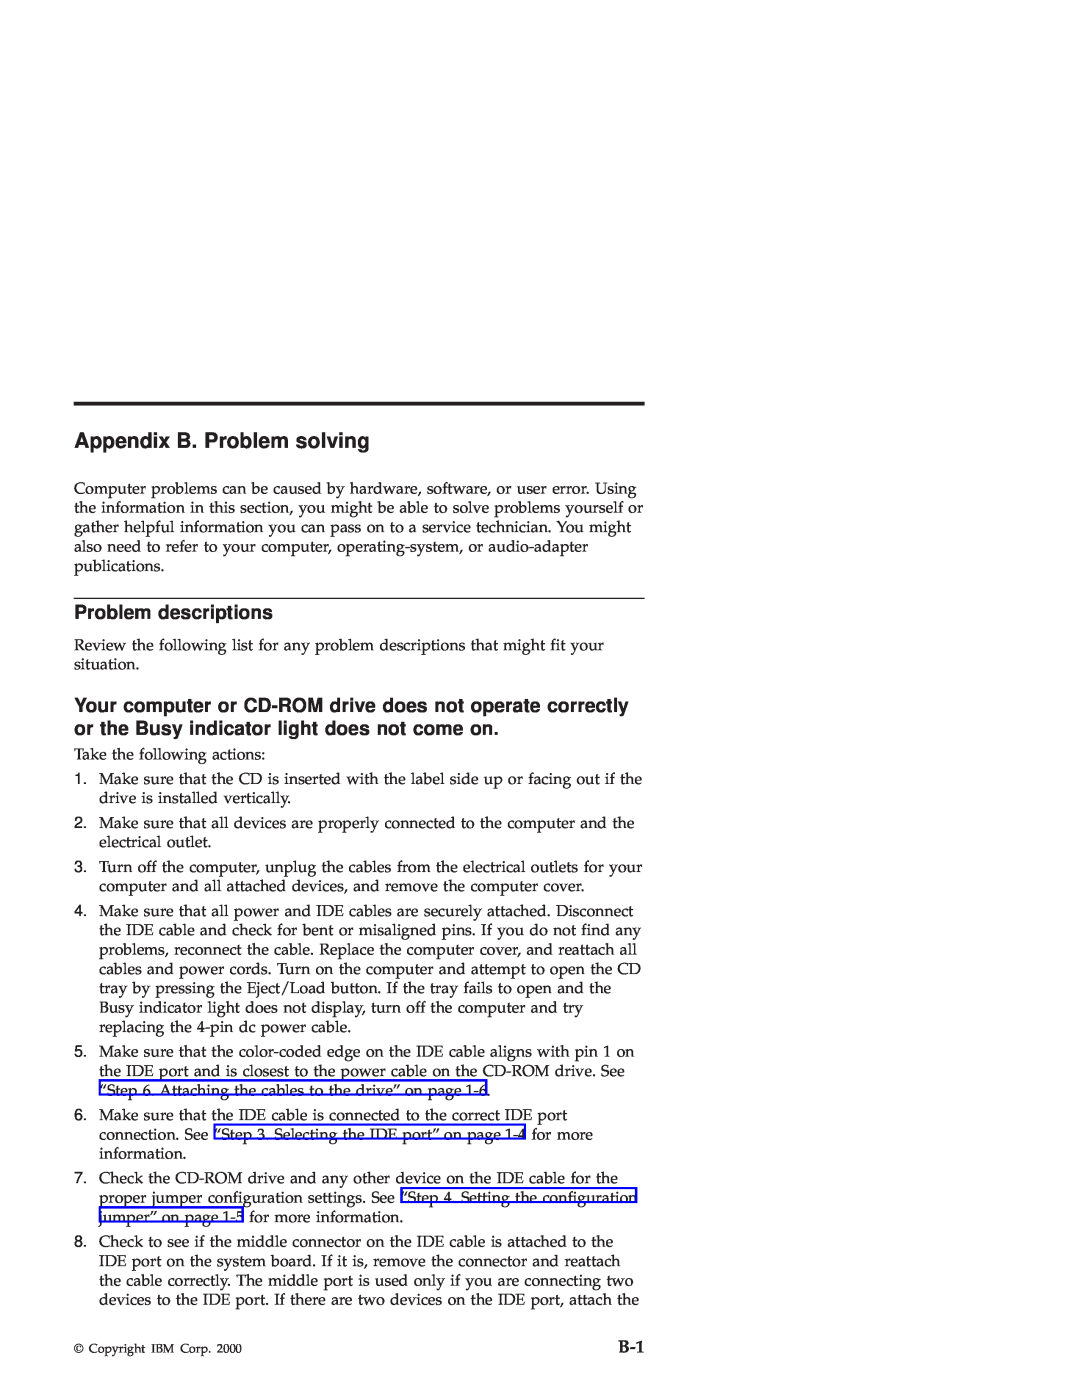 IBM 48X-20X manual Appendix B. Problem solving, Problem descriptions 